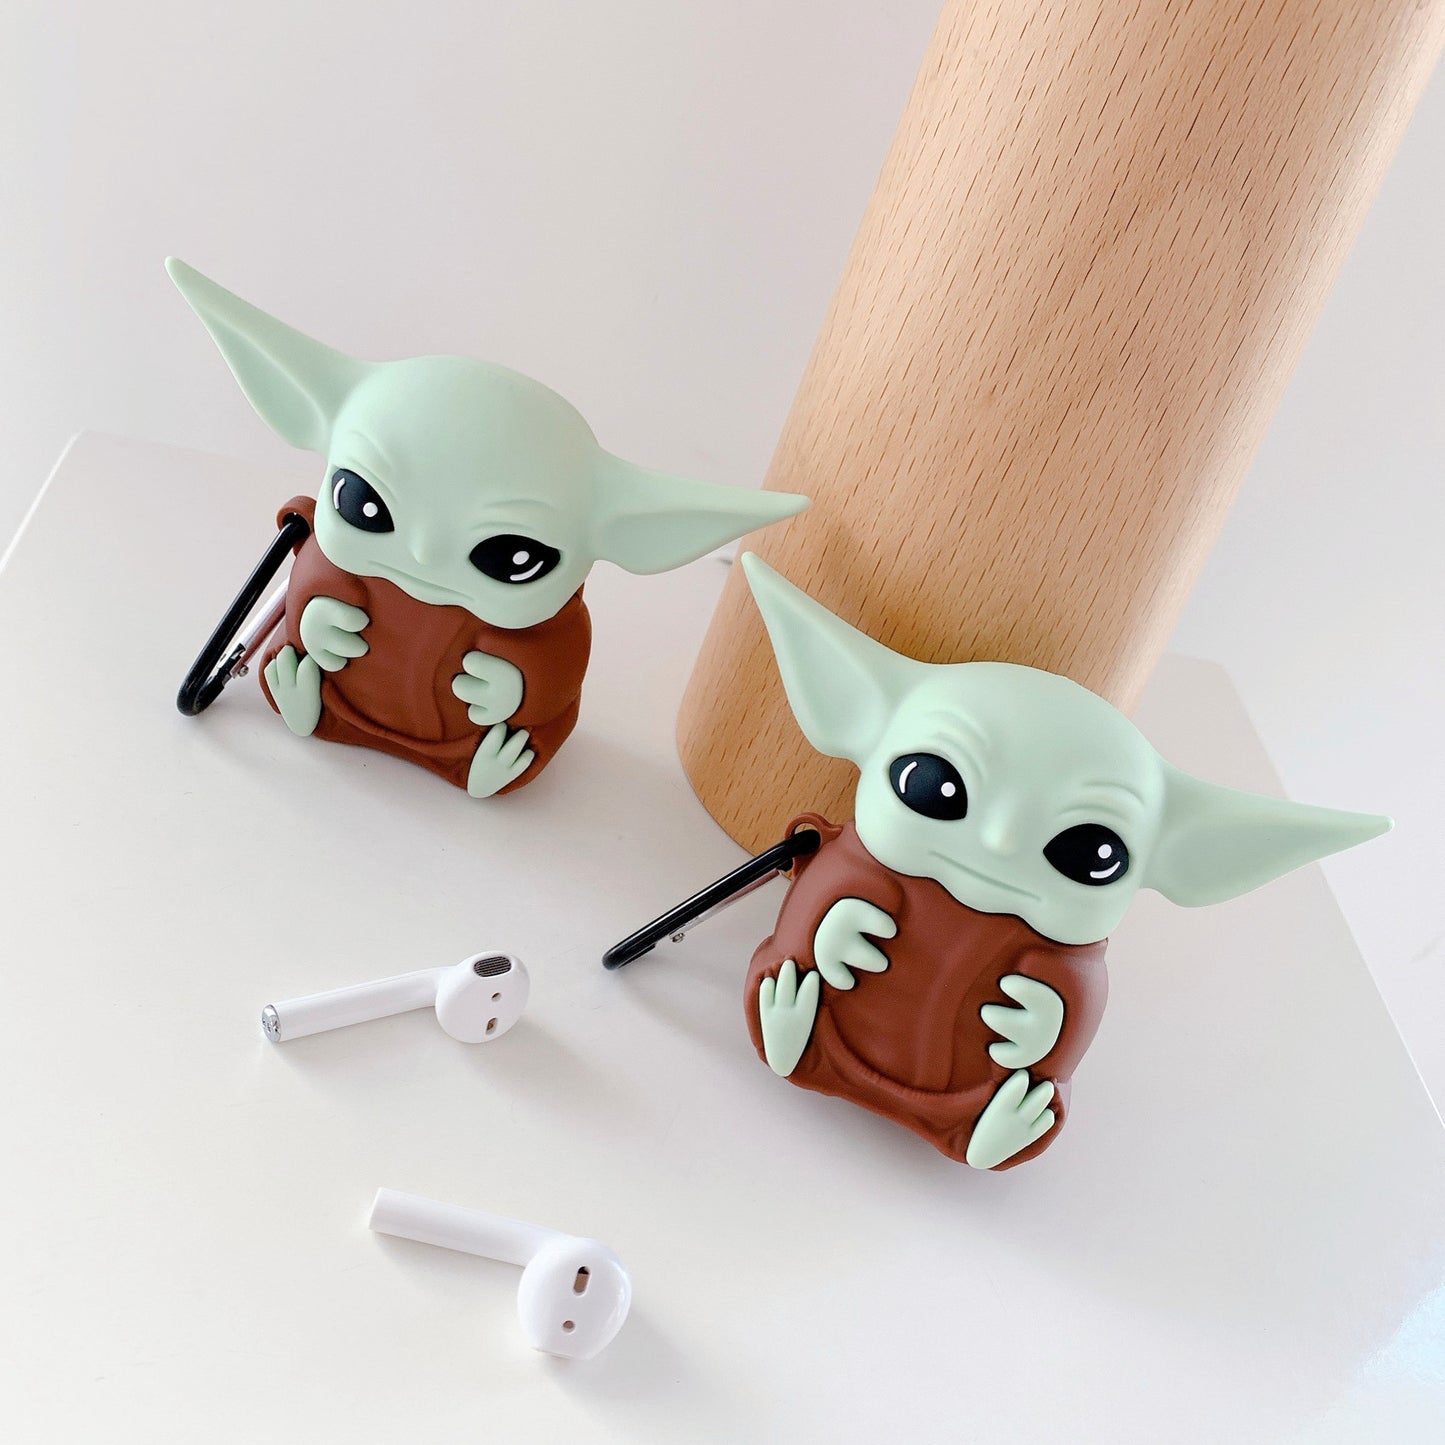 INSINC Creative Yoda The Alien AirPods Case